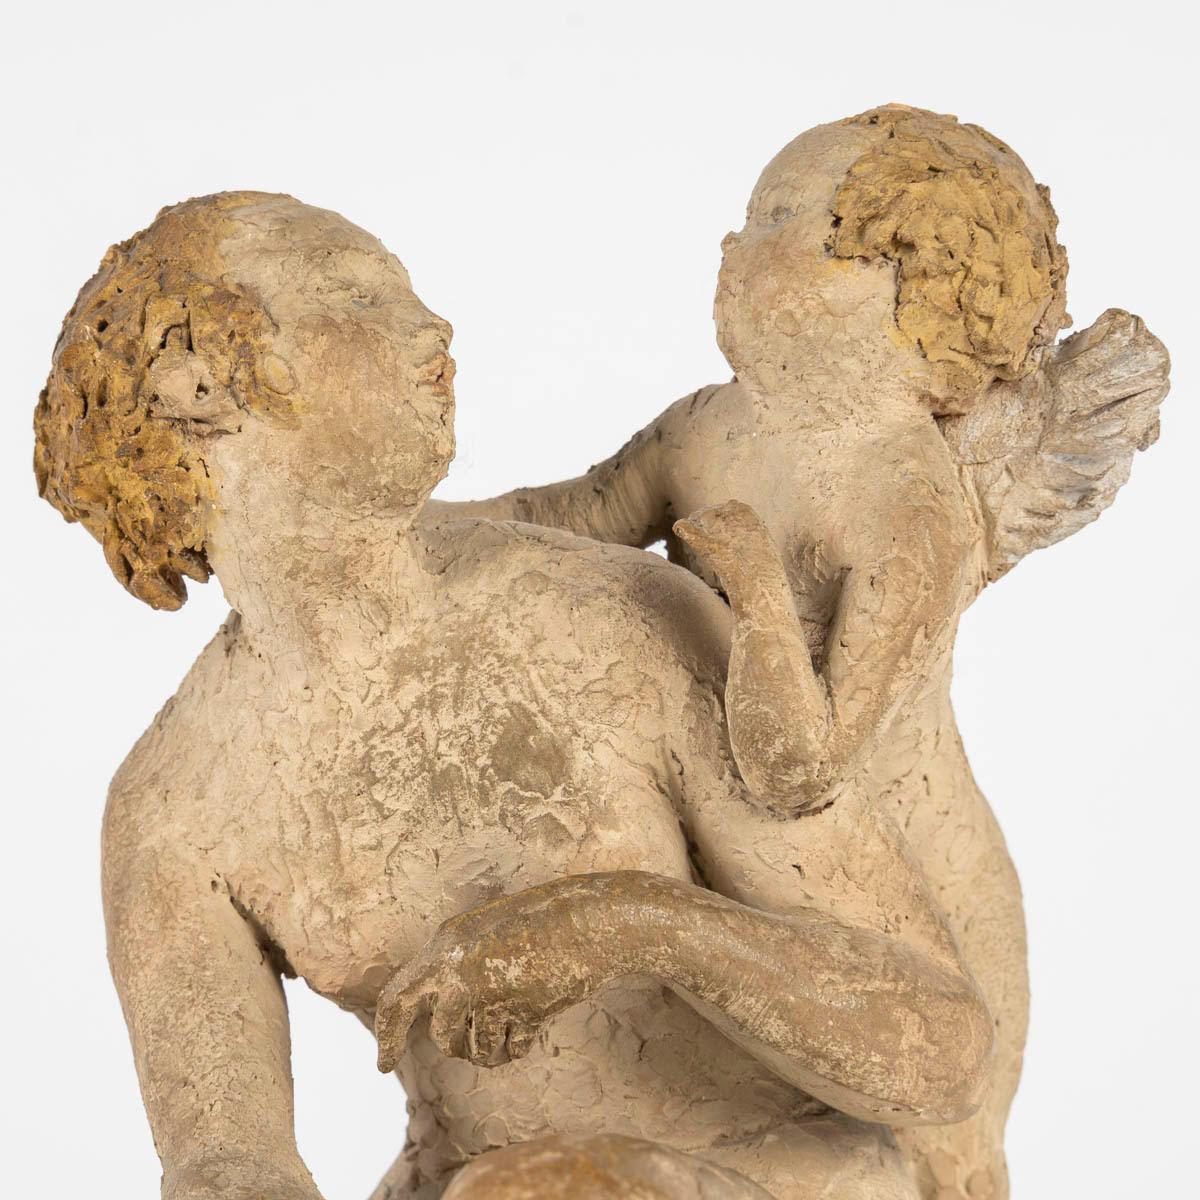 Sculpture en terre cuite d'Arry Bitter, Amour et Cupidon.

Sculpture en terre cuite d'Arry Bitter, Amour et Cupidon, terre cuite originale avec des restes de polychromie.
H : 17cm, D : 14cm